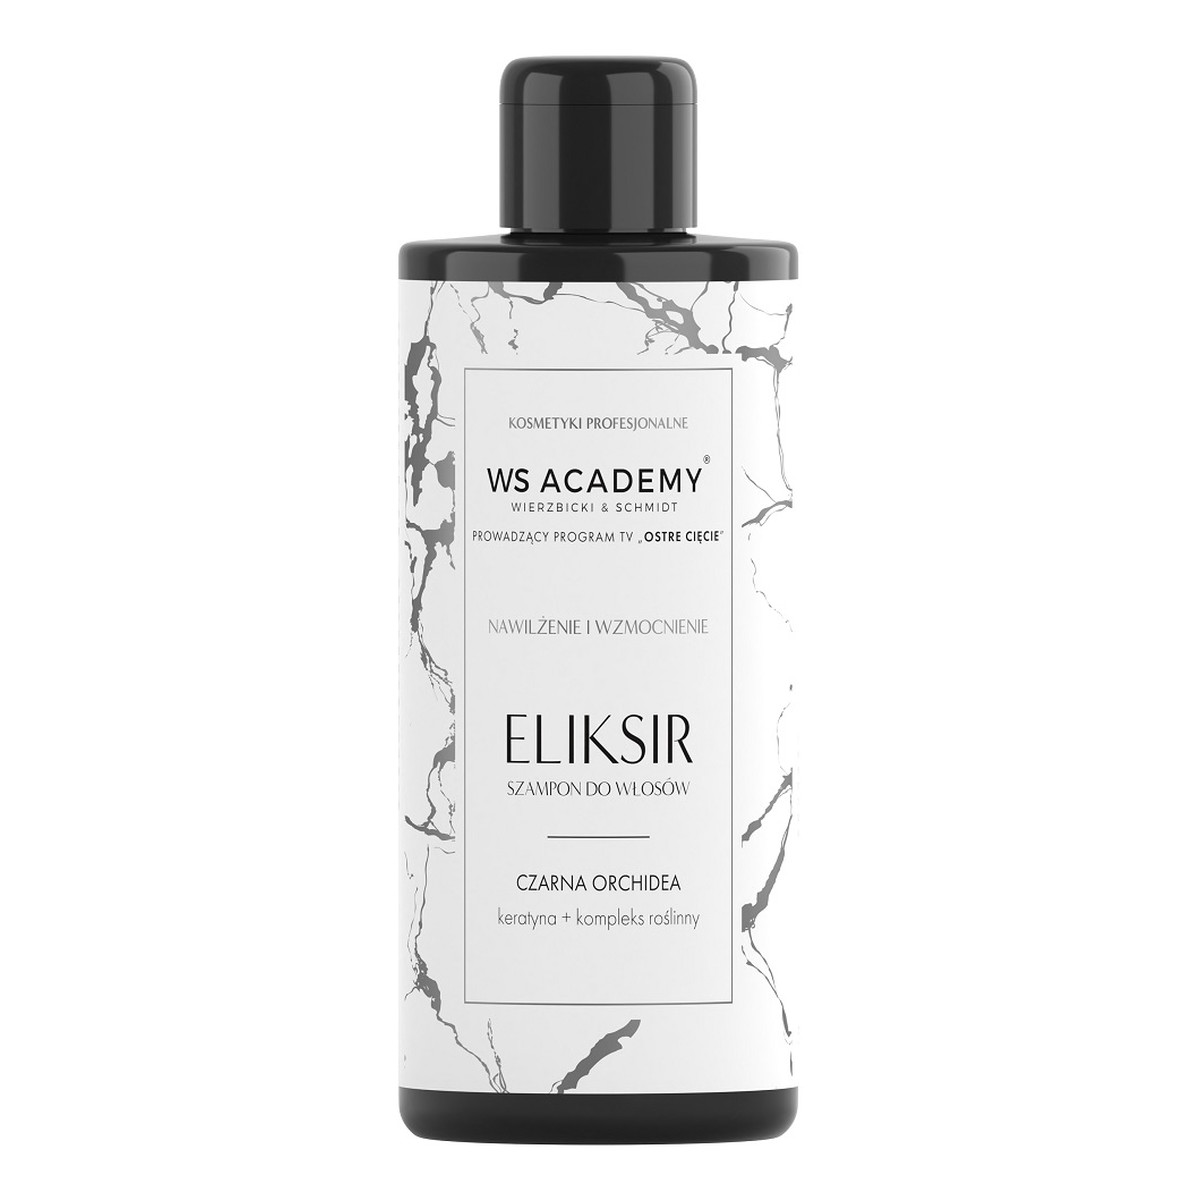 WS Academy Eliksir szampon do włosów czarna orchidea 250ml